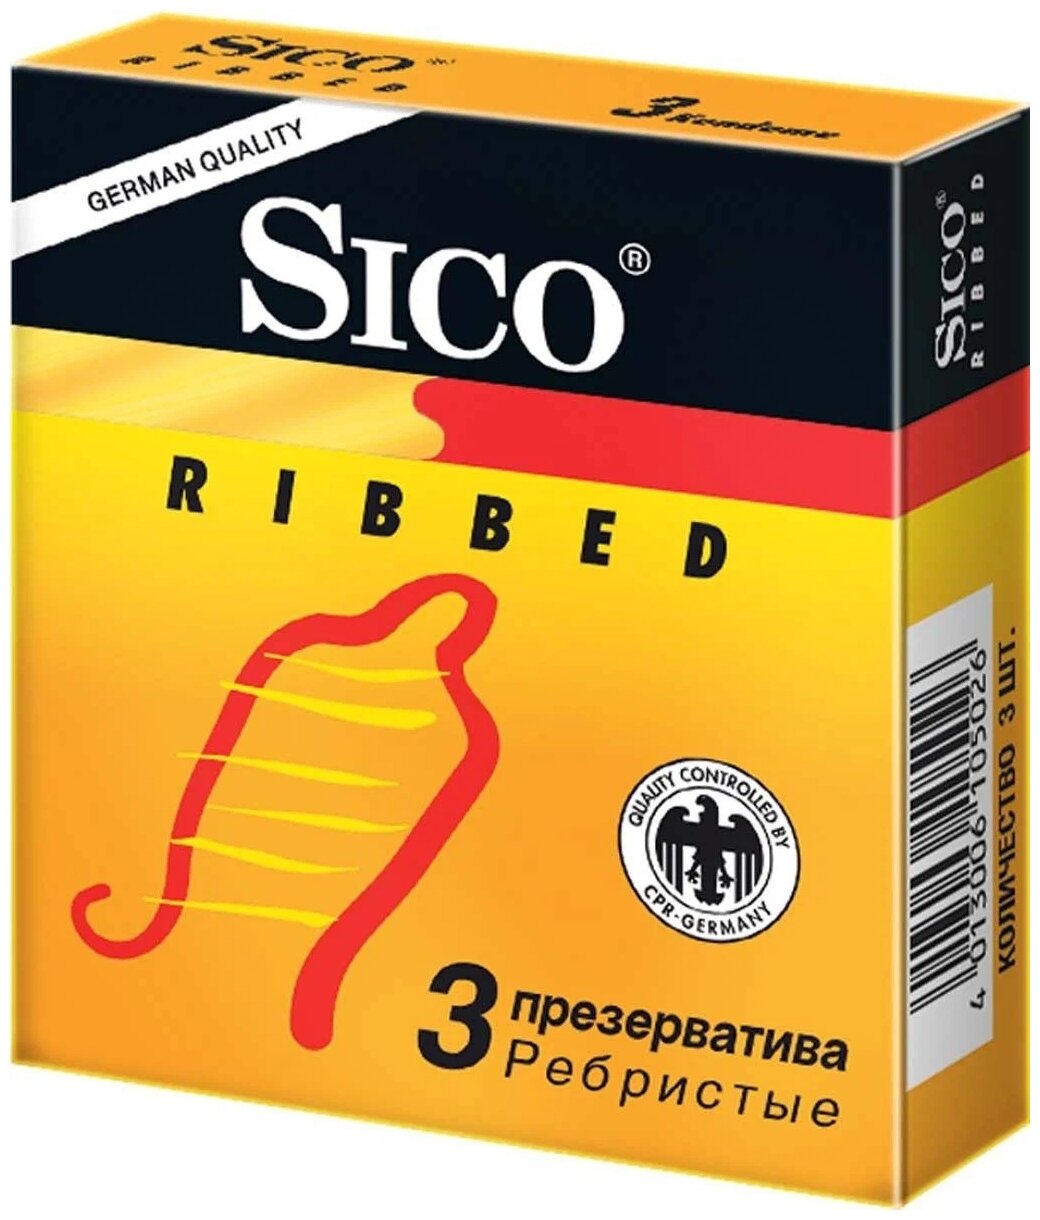 Презервативы Sico Ribbed — купить сегодня c доставкой и гарантией по выгодн...